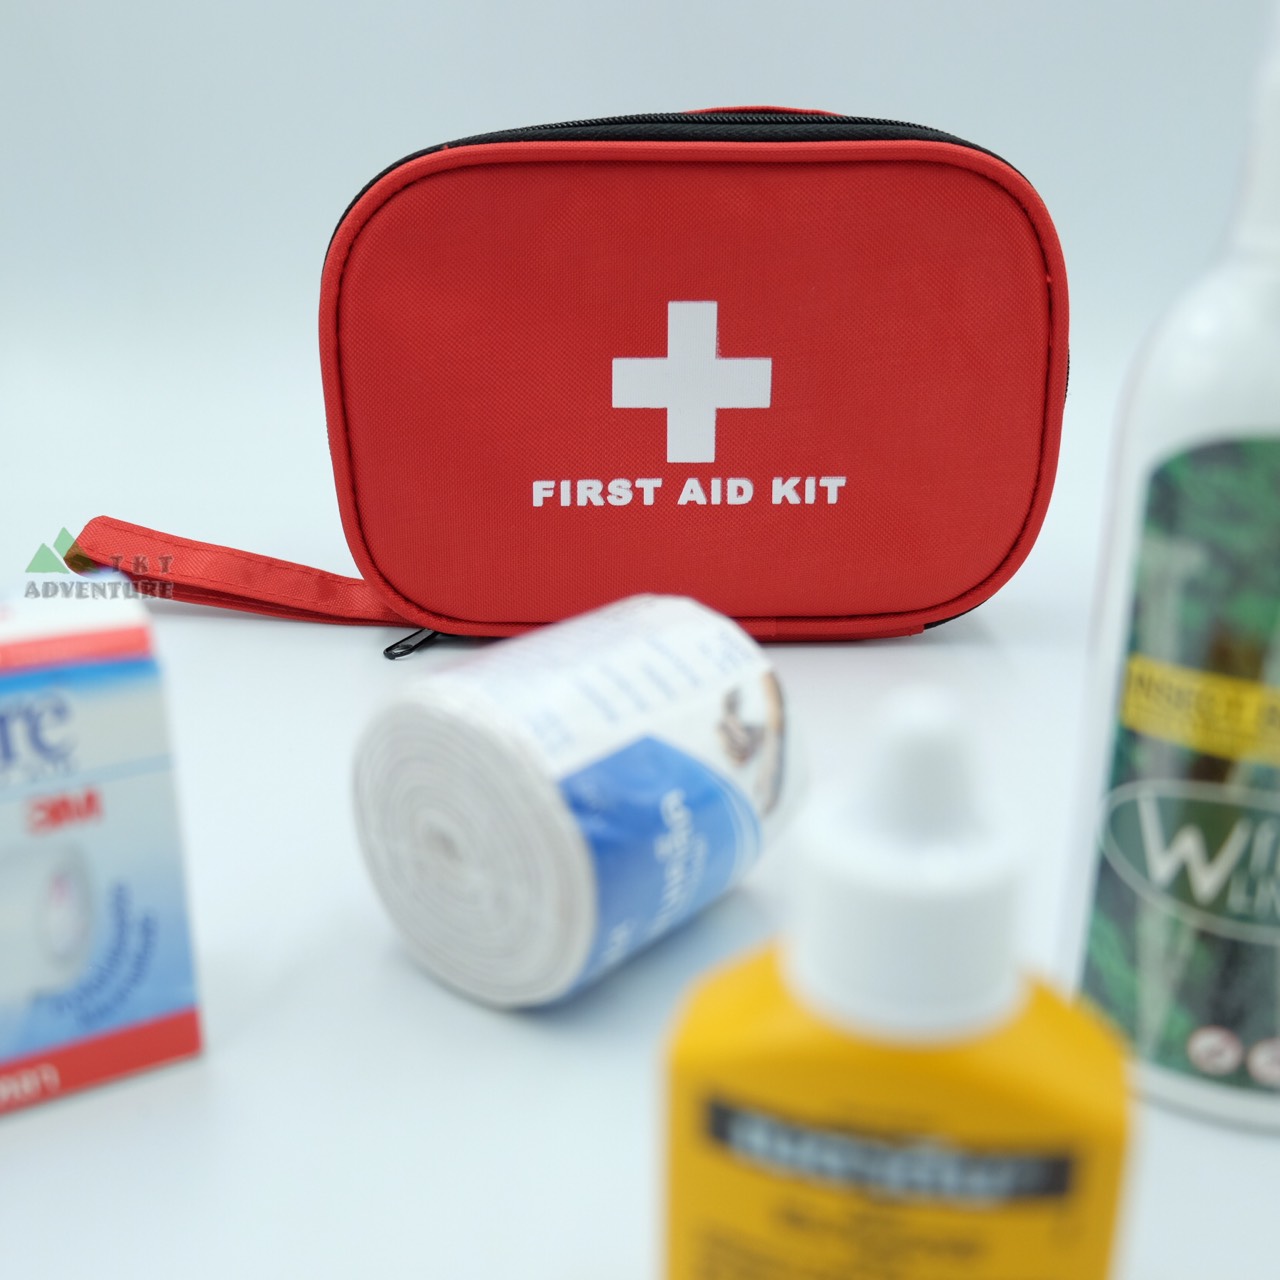 First Aid bag กระเป๋าพยาบาล กระเป๋าปฐมพยาบาล กระเป๋าพยาบาลฉุกเฉิน  สำหรับจัดเซตอุปกรณ์ทำแผลเล็ก ยาสามัญประจำบ้าน พกพาติดตัว ติดรถไว้ใช้ในยามฉุกเฉินได้ หรือไปแค้มปิ้งนอกบ้านก็ควรต้องมีติดตัว TKT Adventure shop ร้านขายของเดินป่า